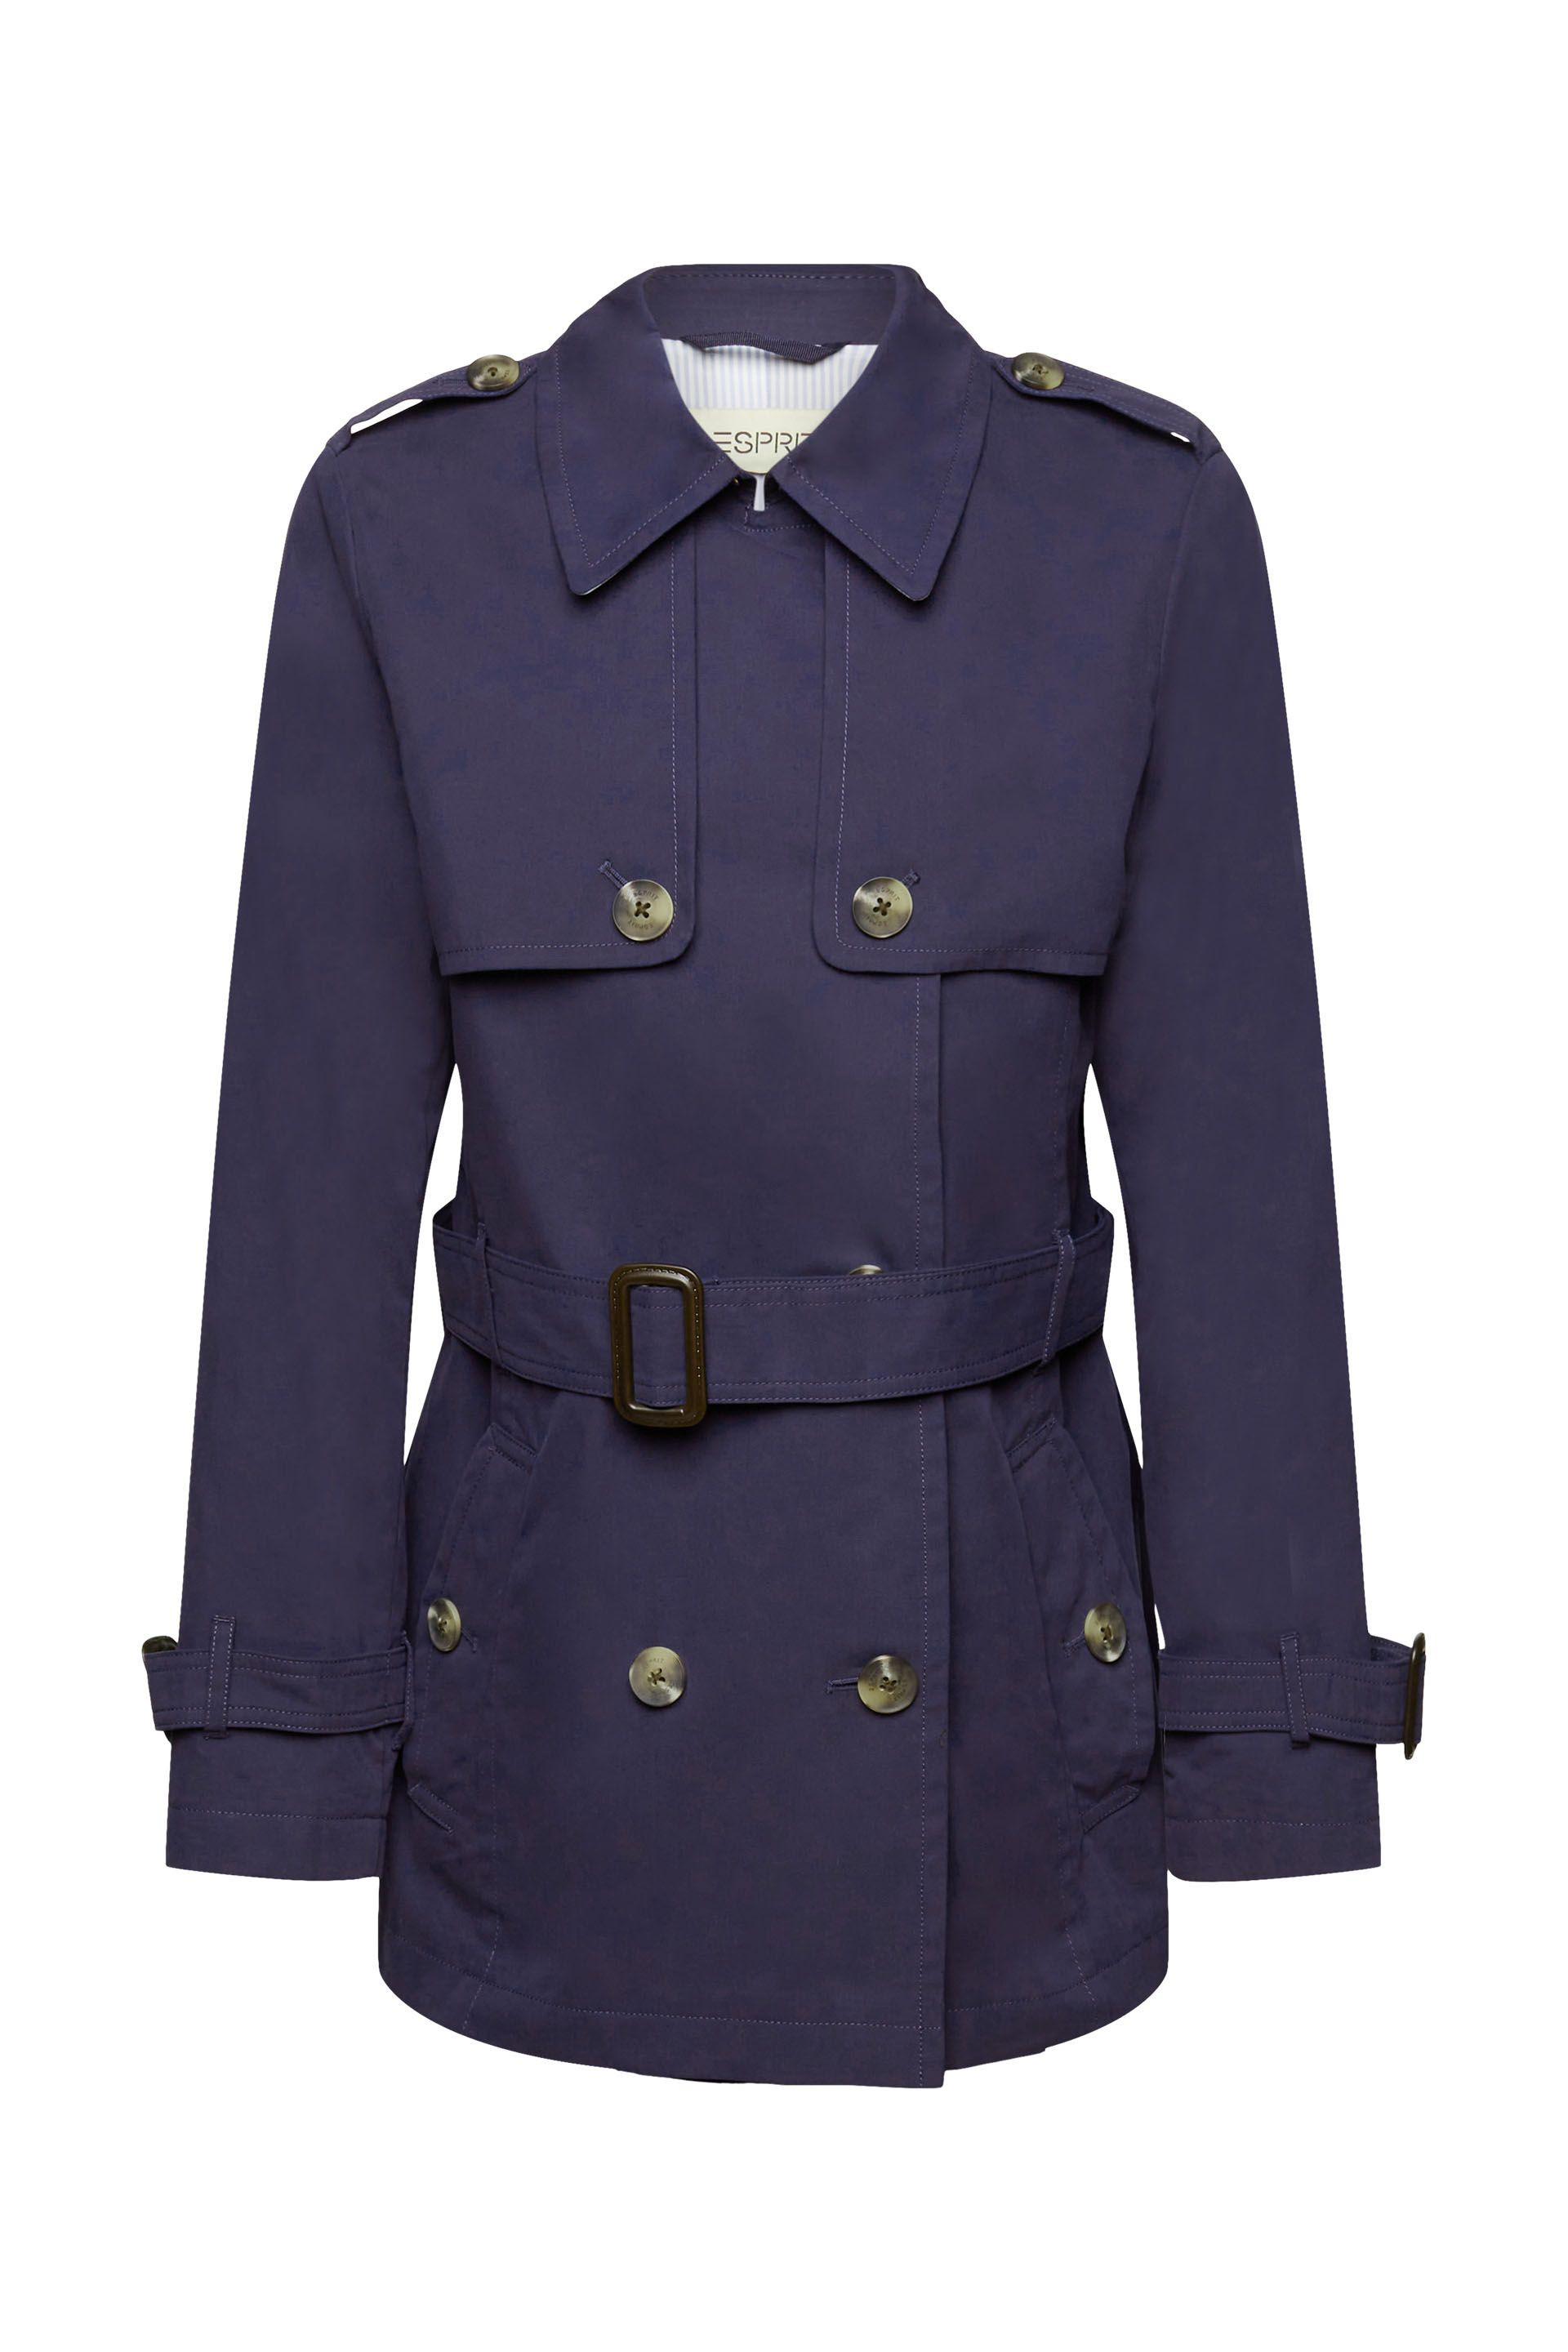 Esprit - Short trench coat with belt, Dark Blue, large image number 0